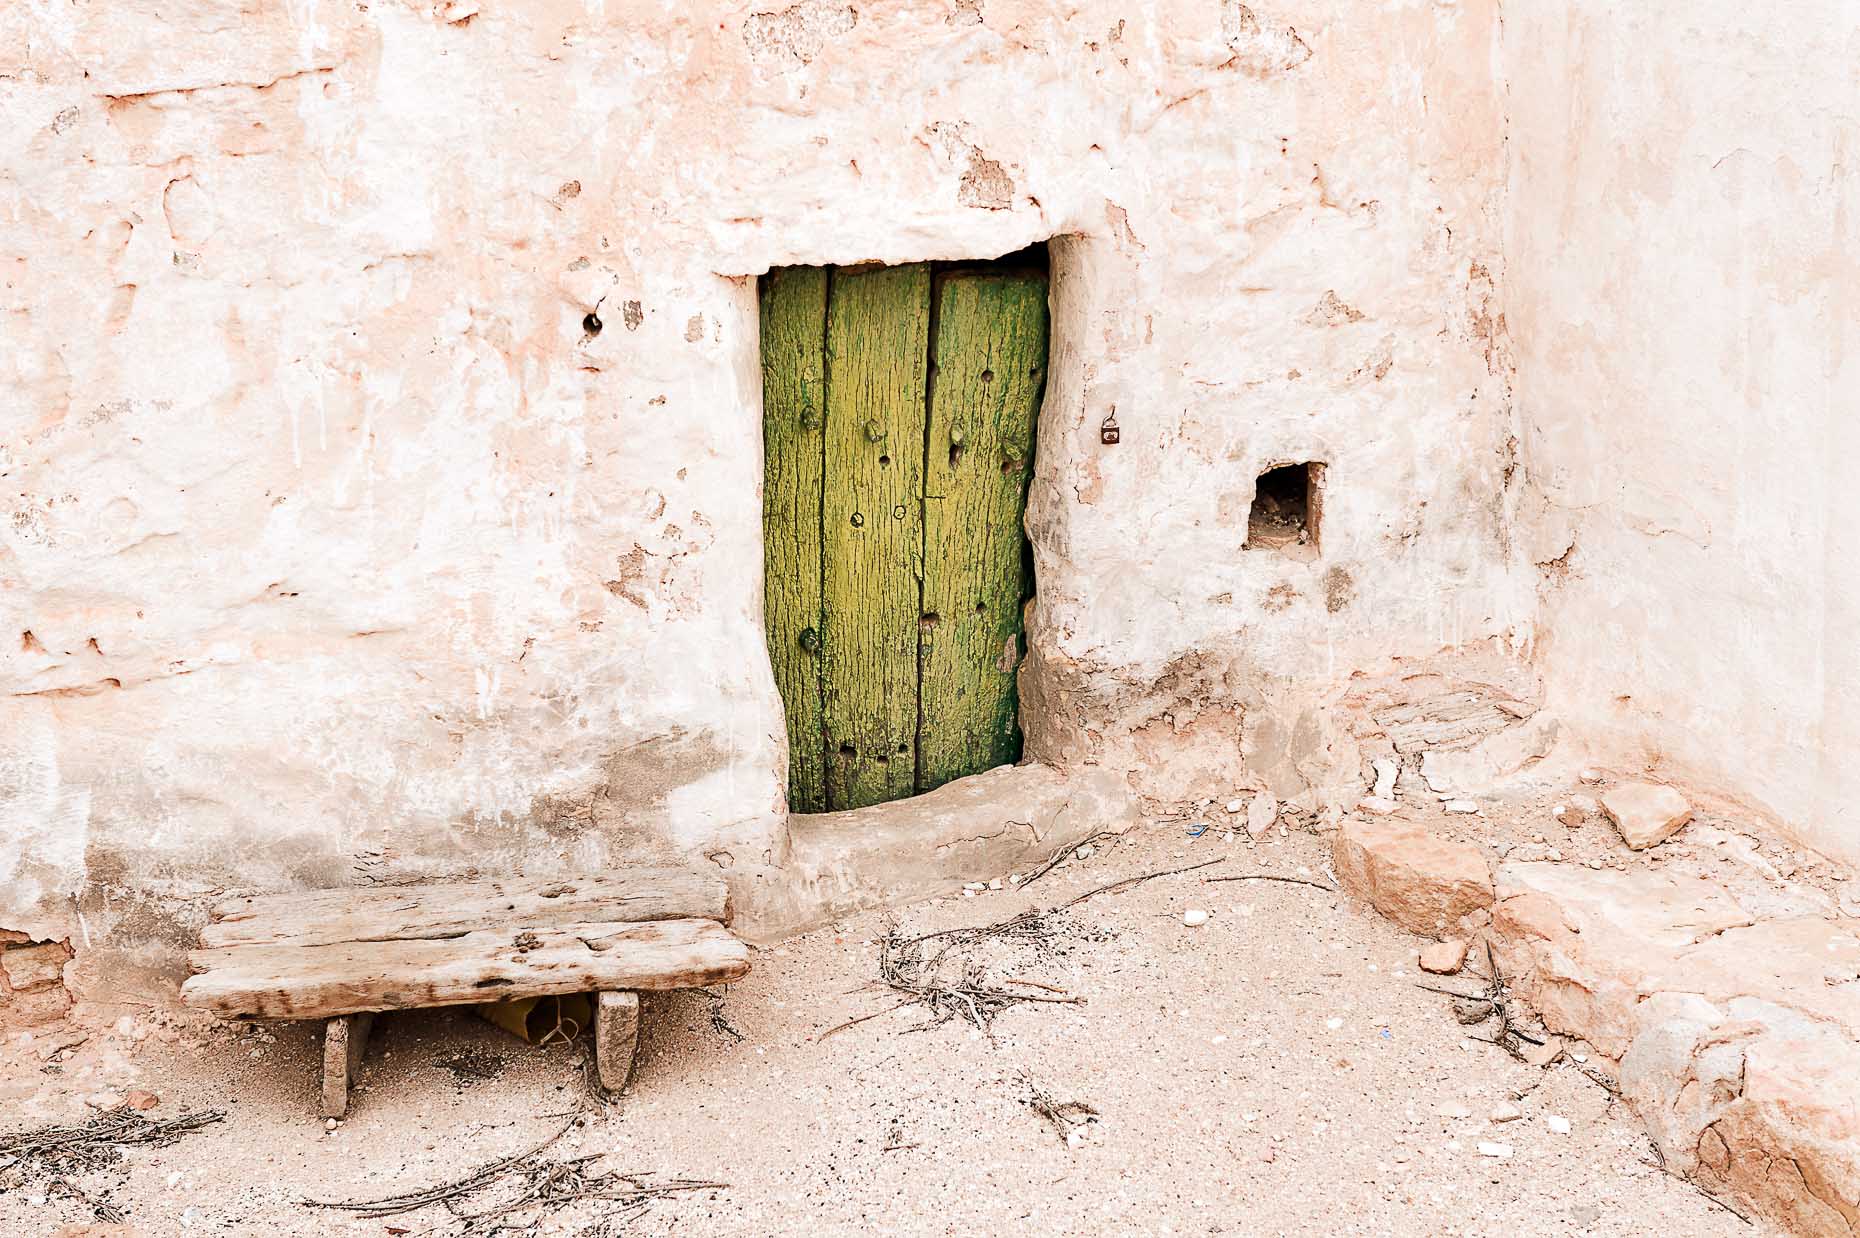 Guermassa, Tunisia